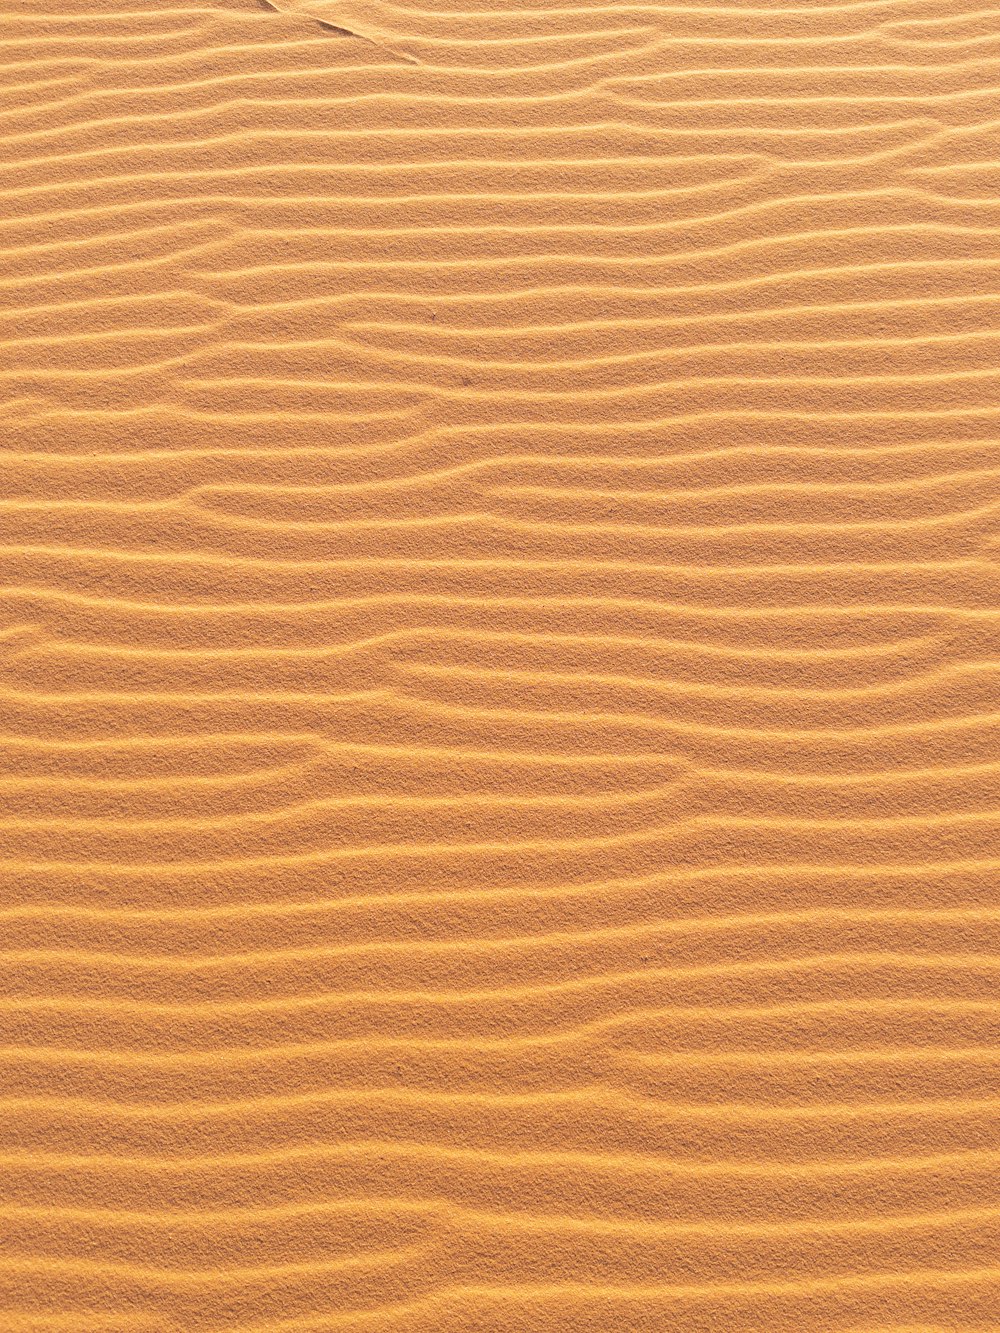 sable brun avec l’ombre de la personne